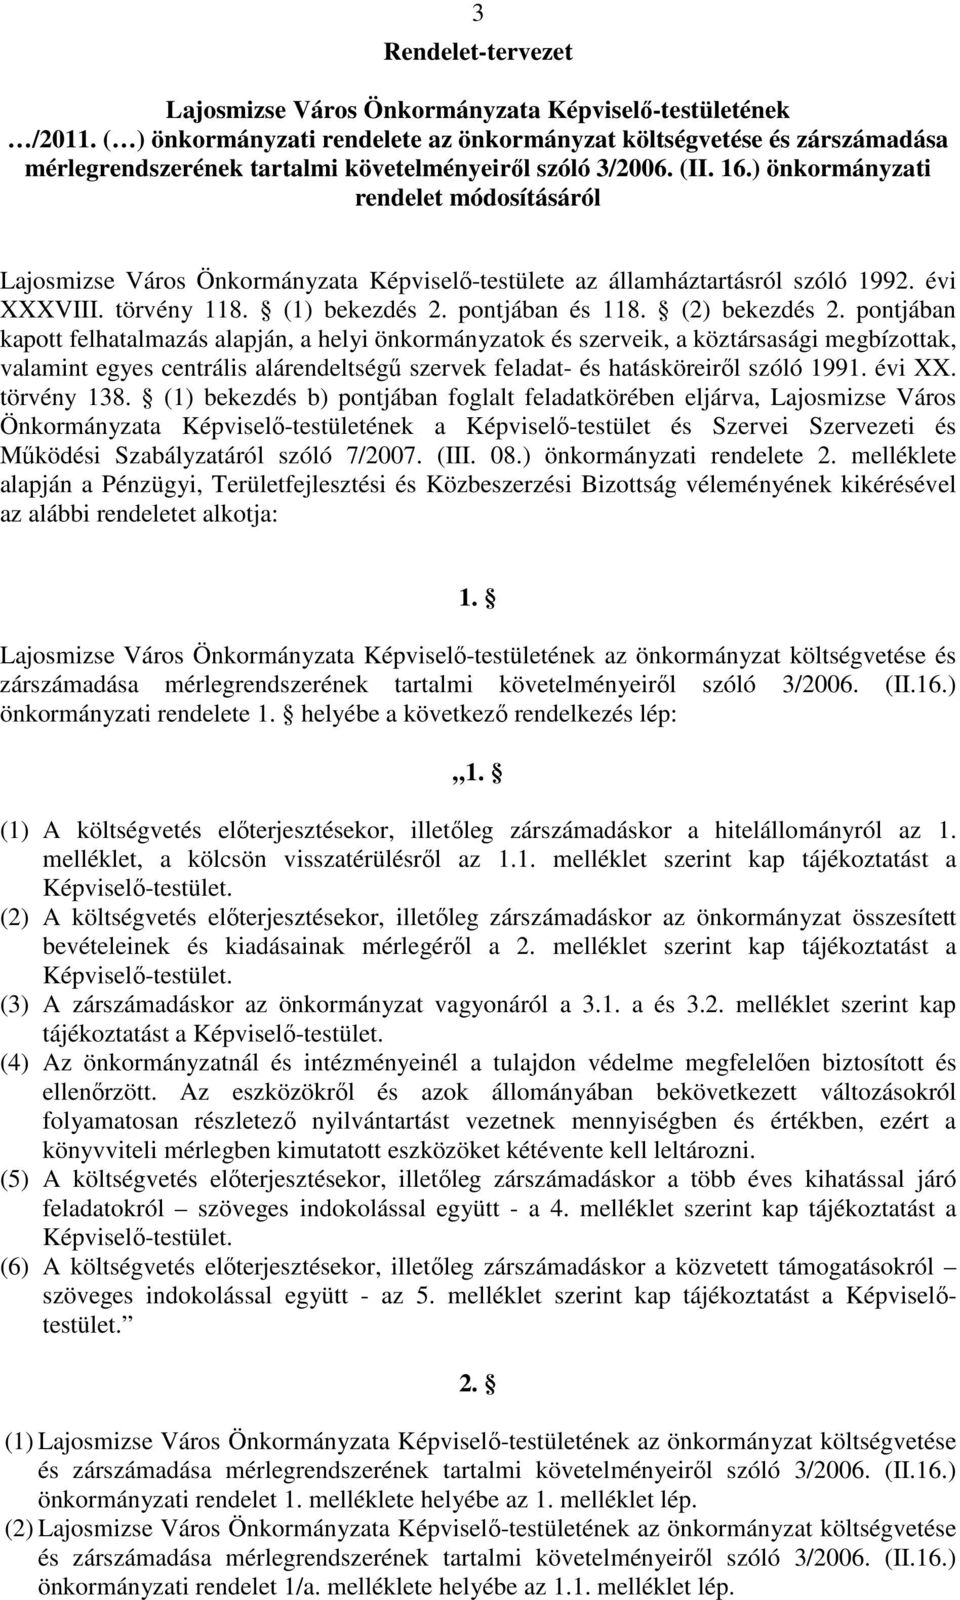 ) önkormányzati rendelet módosításáról Lajosmizse Város Önkormányzata Képviselı-testülete az államháztartásról szóló 1992. évi XXXVIII. törvény 118. (1) bekezdés 2. pontjában és 118. (2) bekezdés 2.